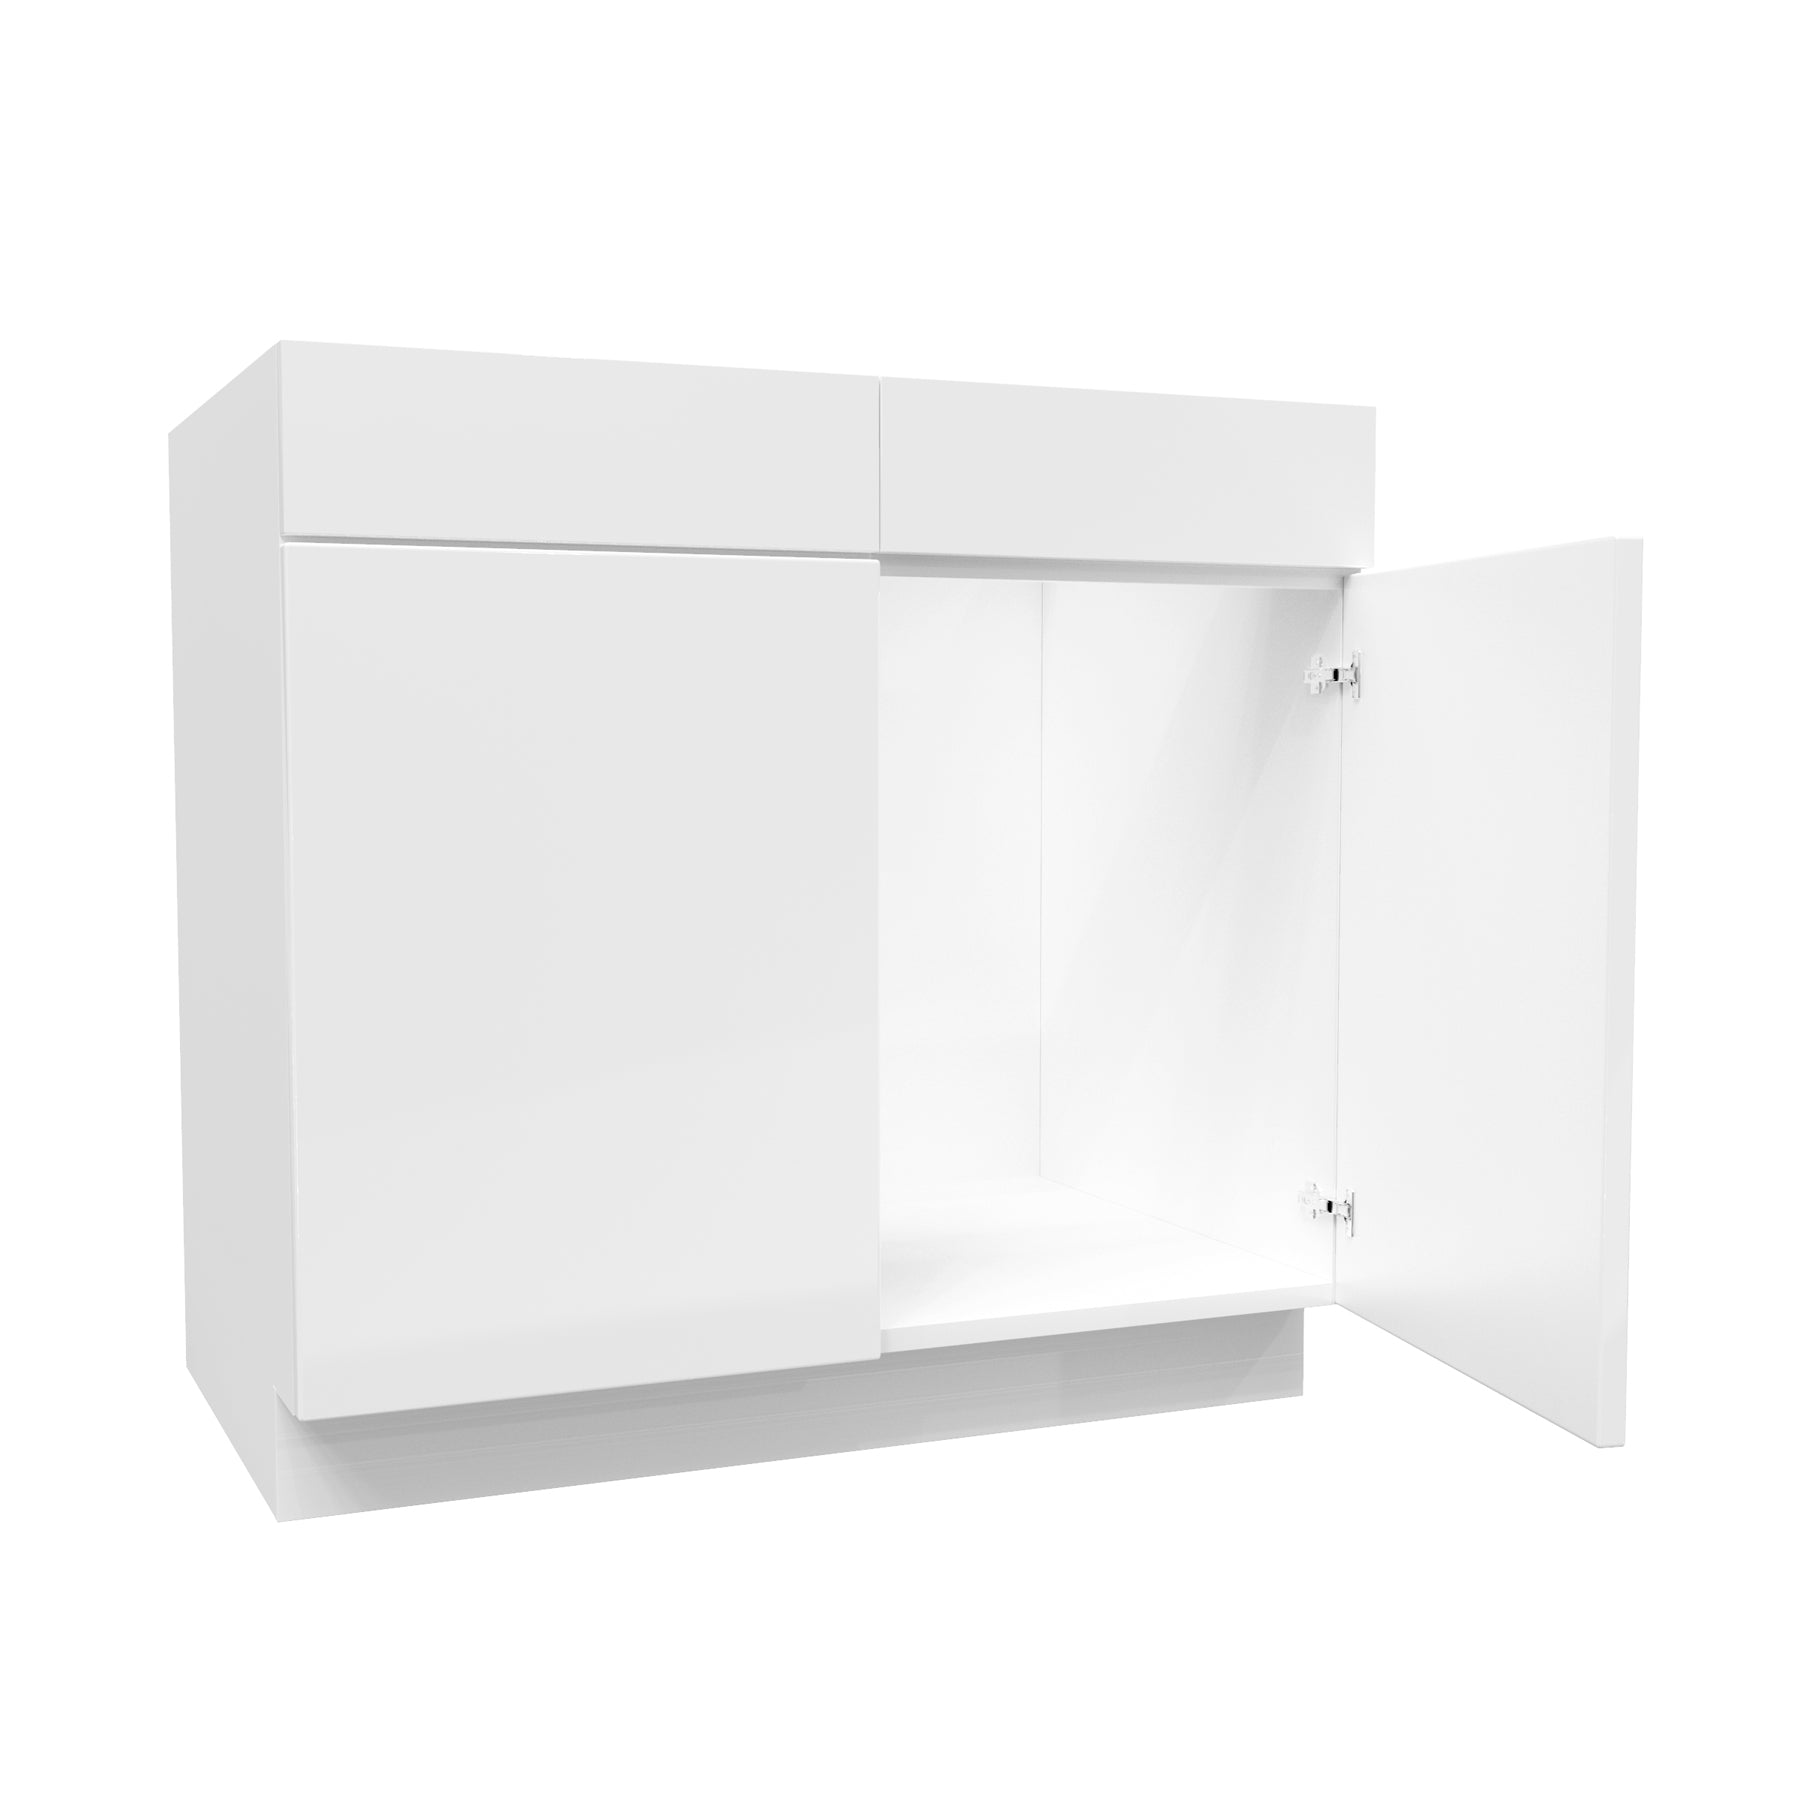 Sink Base Cabinet | Milano White | 36W x 34.5H x 24D